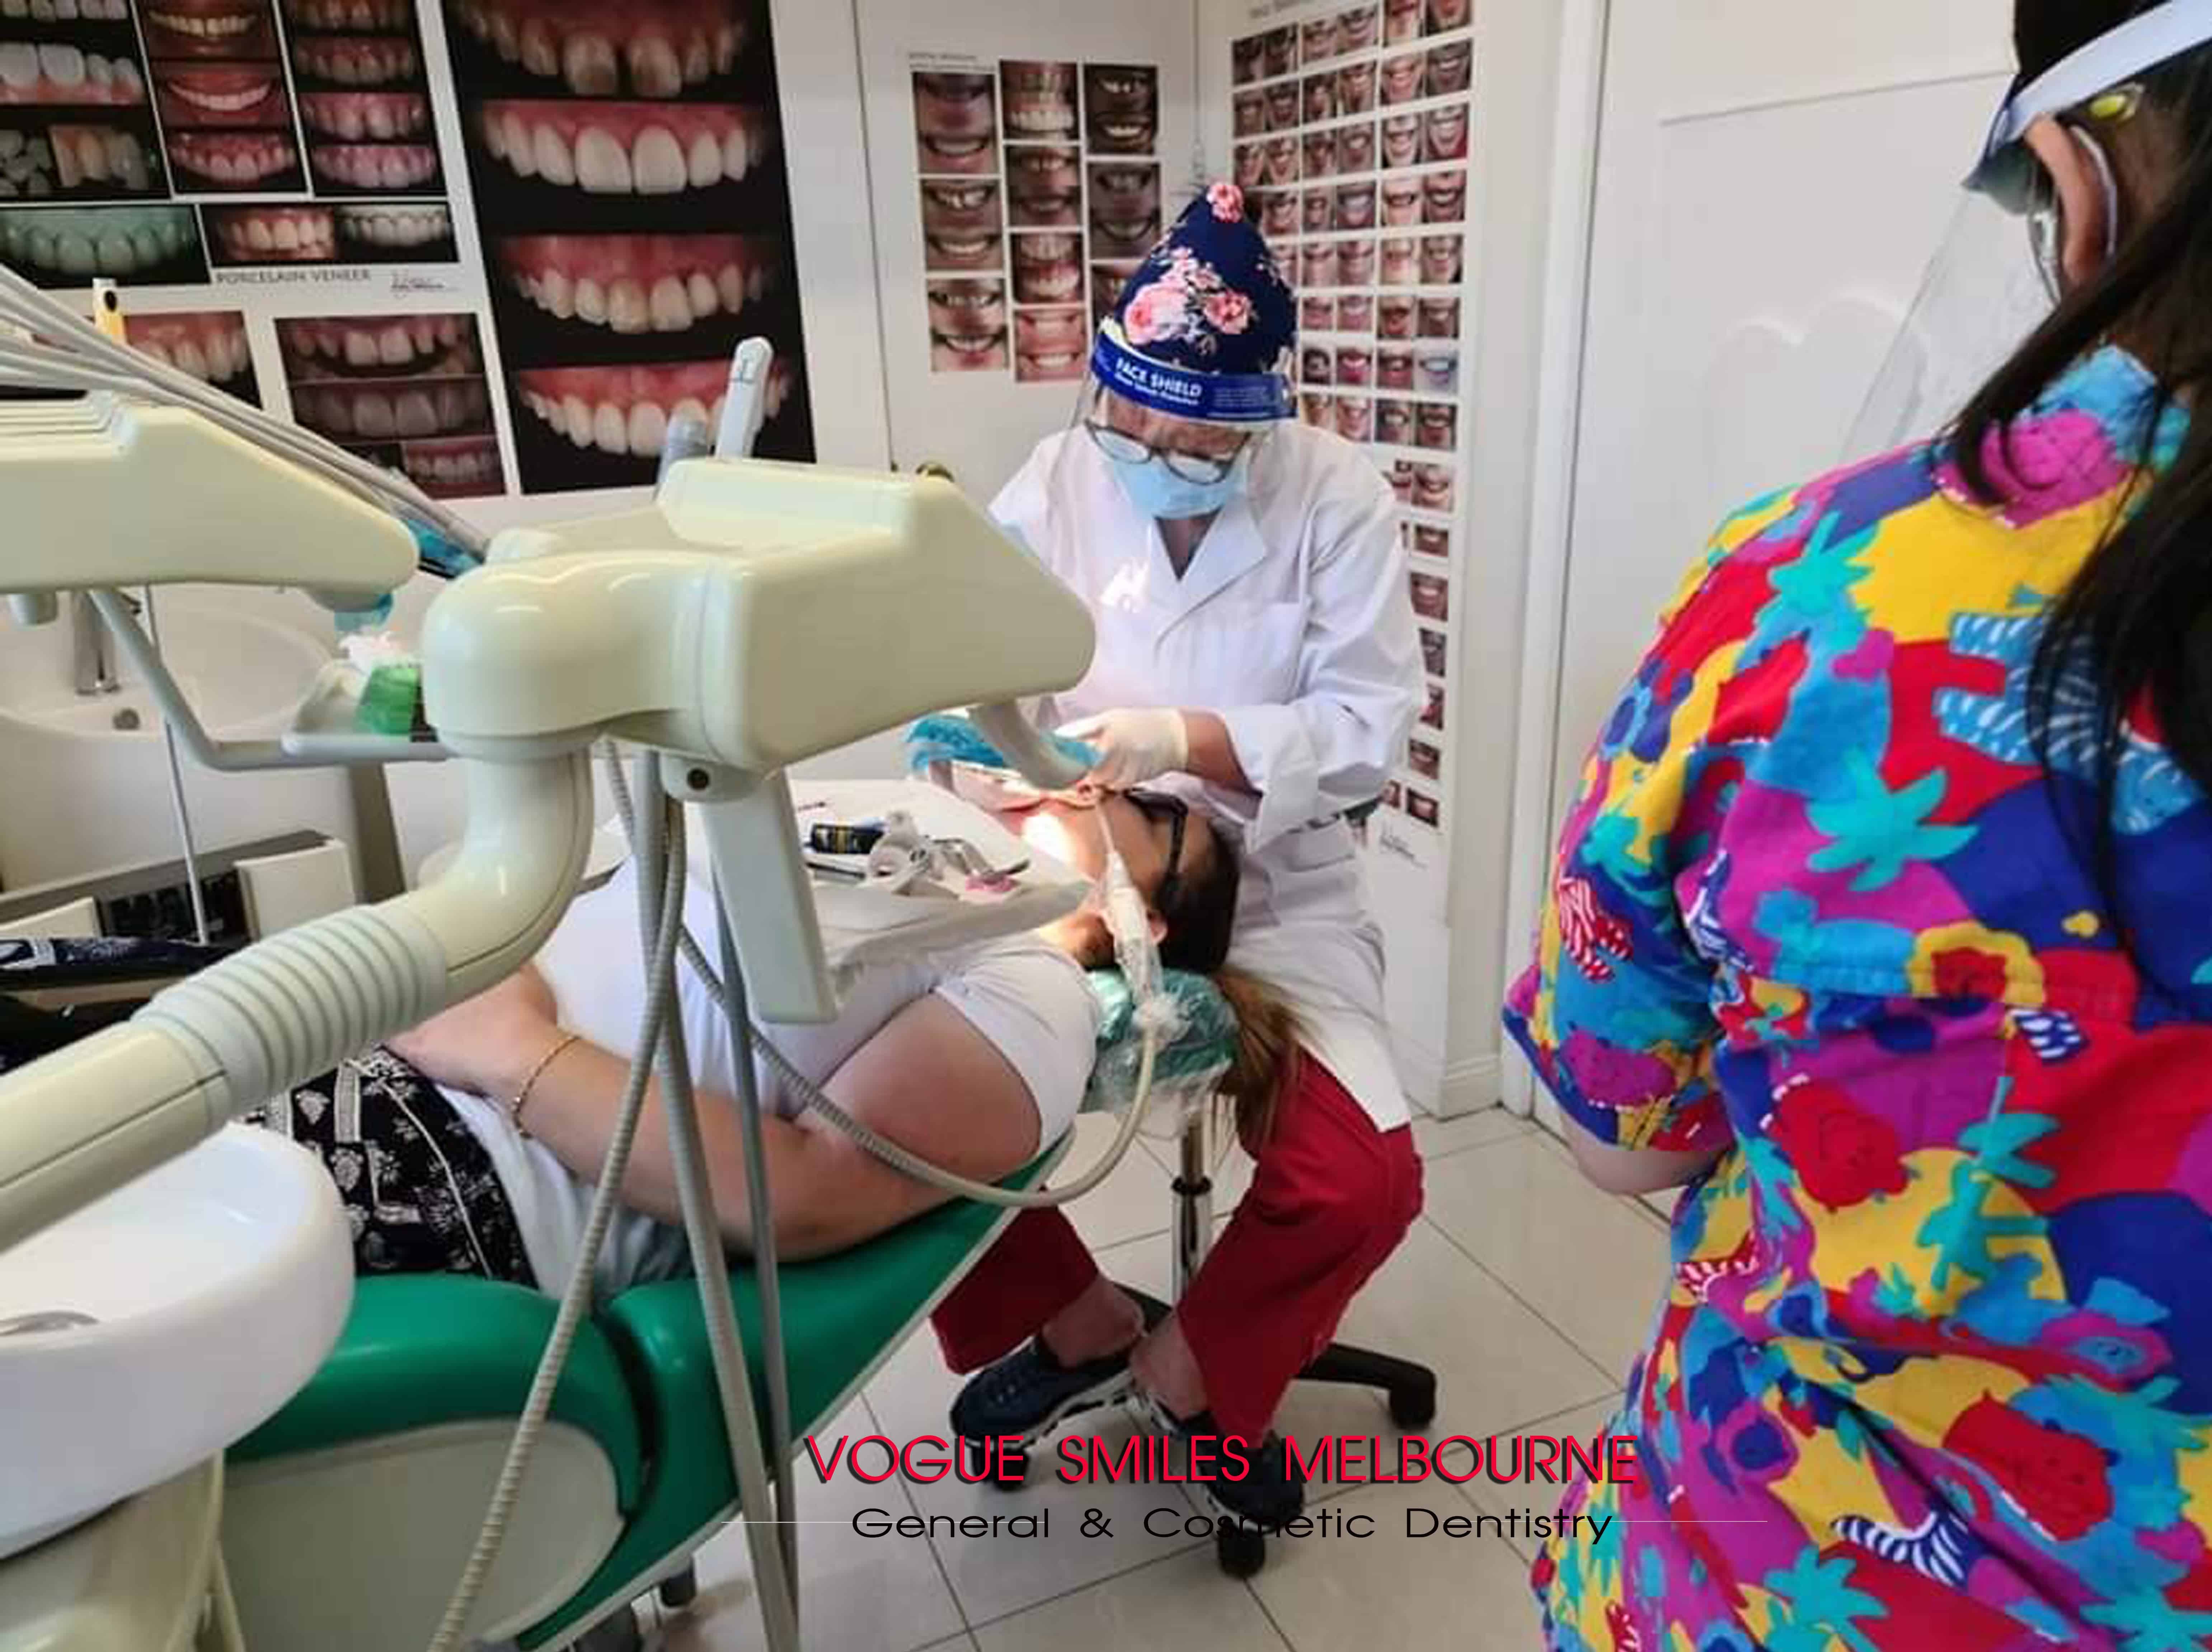 Dr Zenaidy Castro is the Dentist Vogue Smiles Melbourne